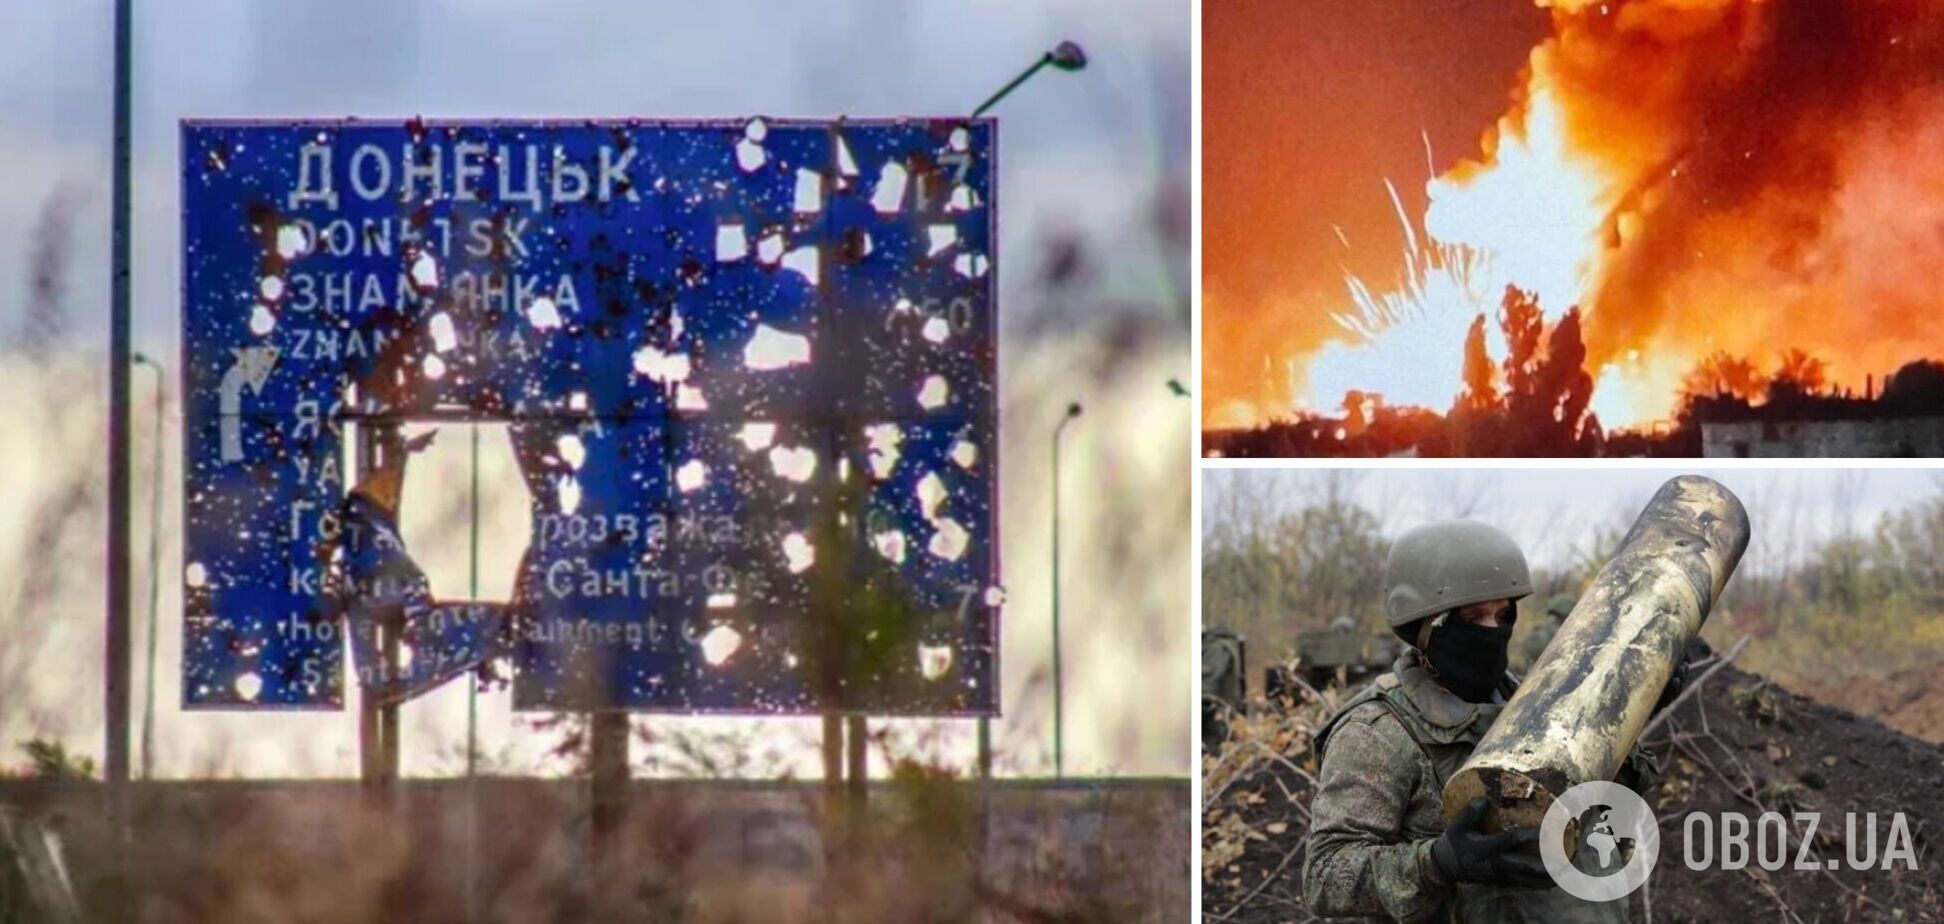 Обломки долетали в другие районы: в оккупированном Донецке 'минуснули' состав БК. Фото